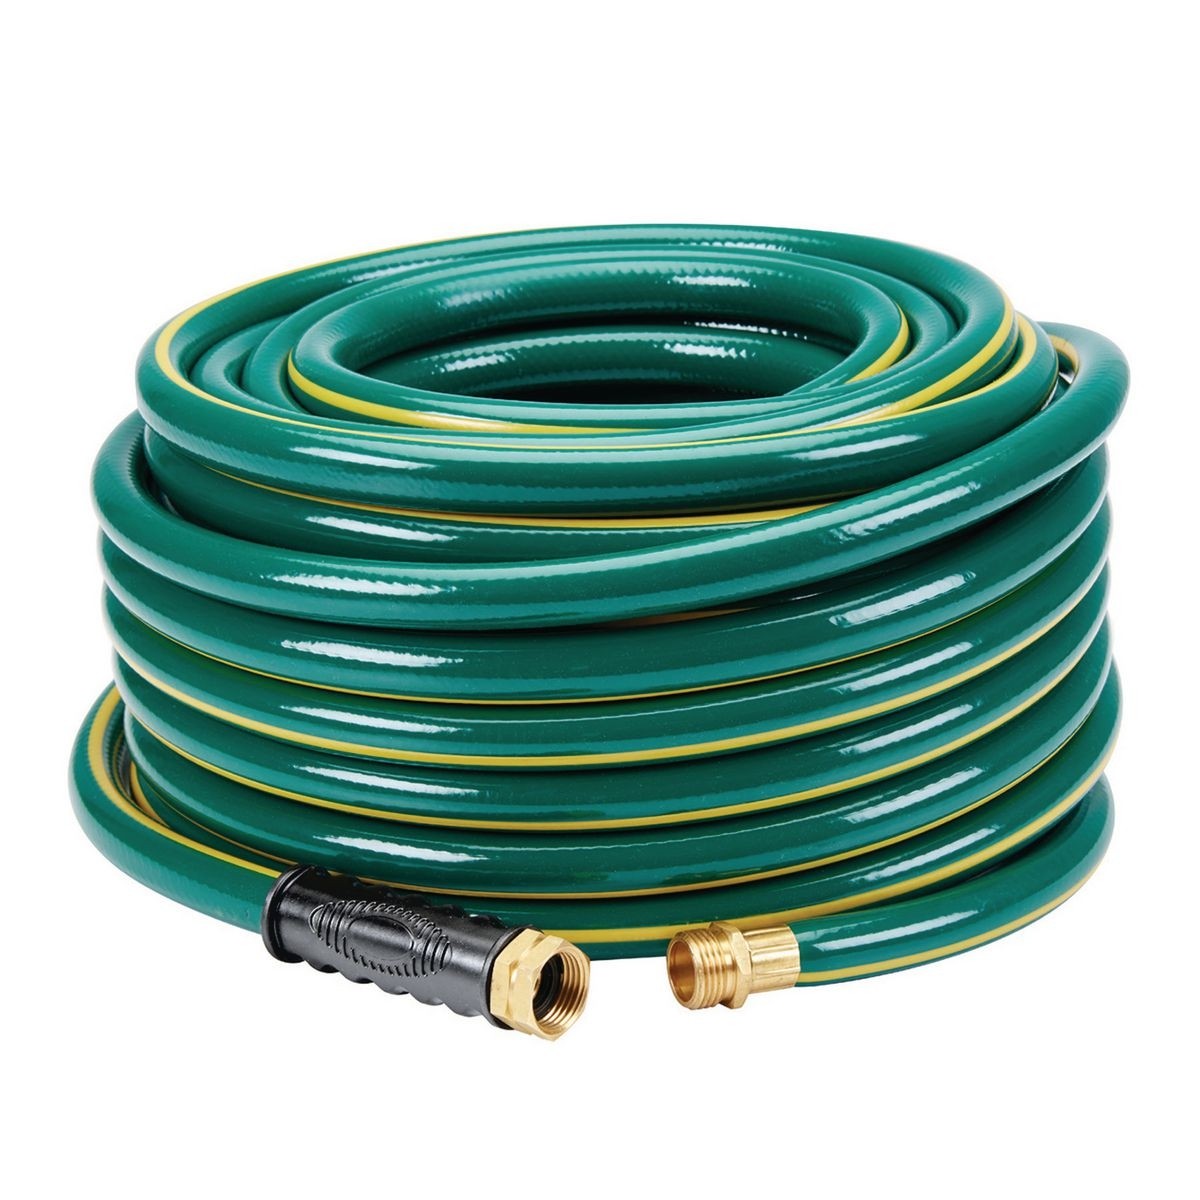 Water hose - 30 ft similar-image